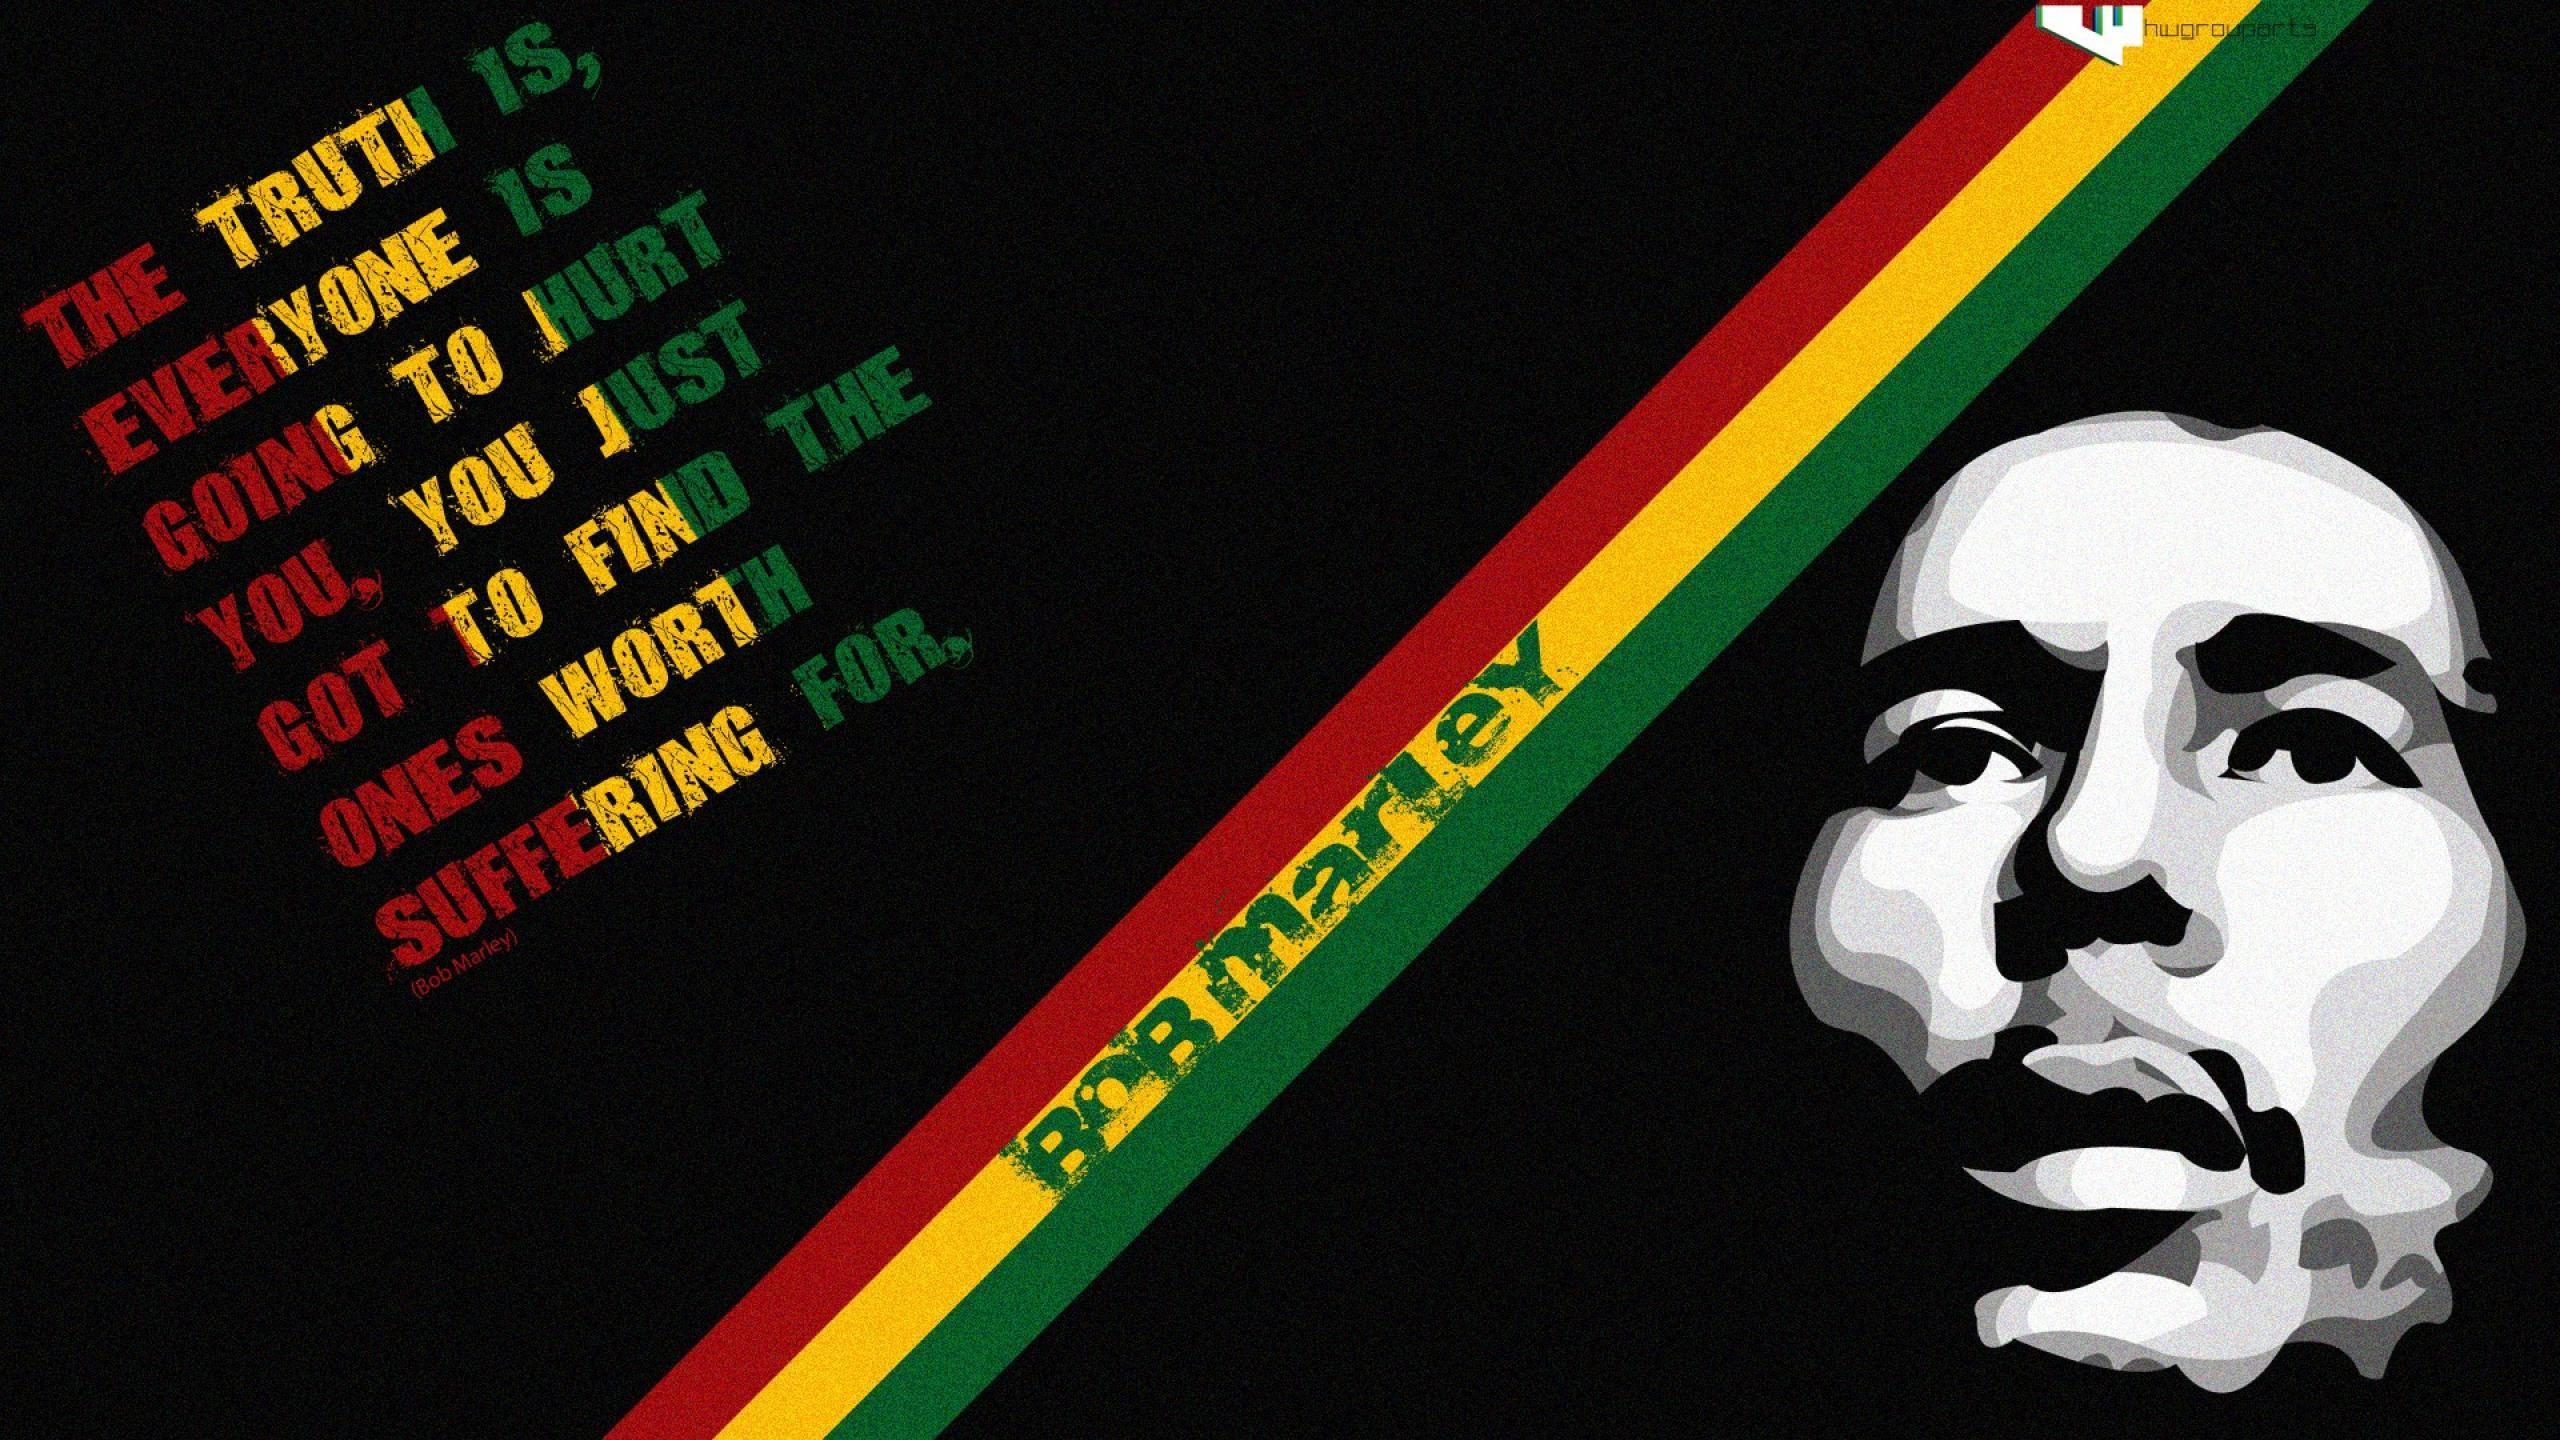 Bob Marley Rasta wallpaper